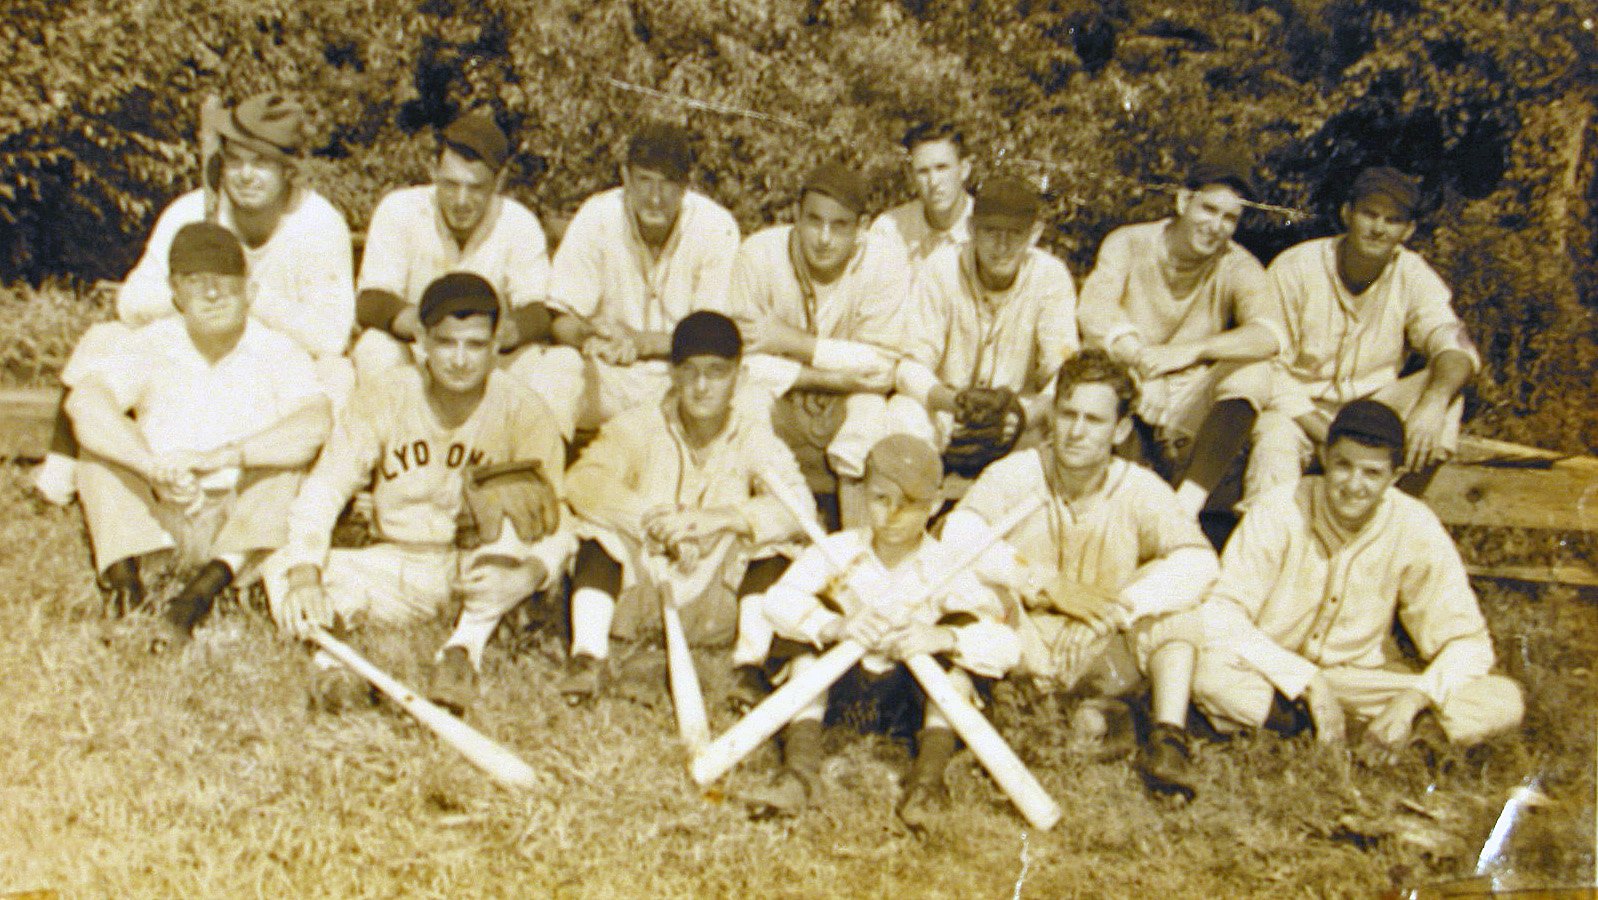 Davis Shore baseball team circa 1940s